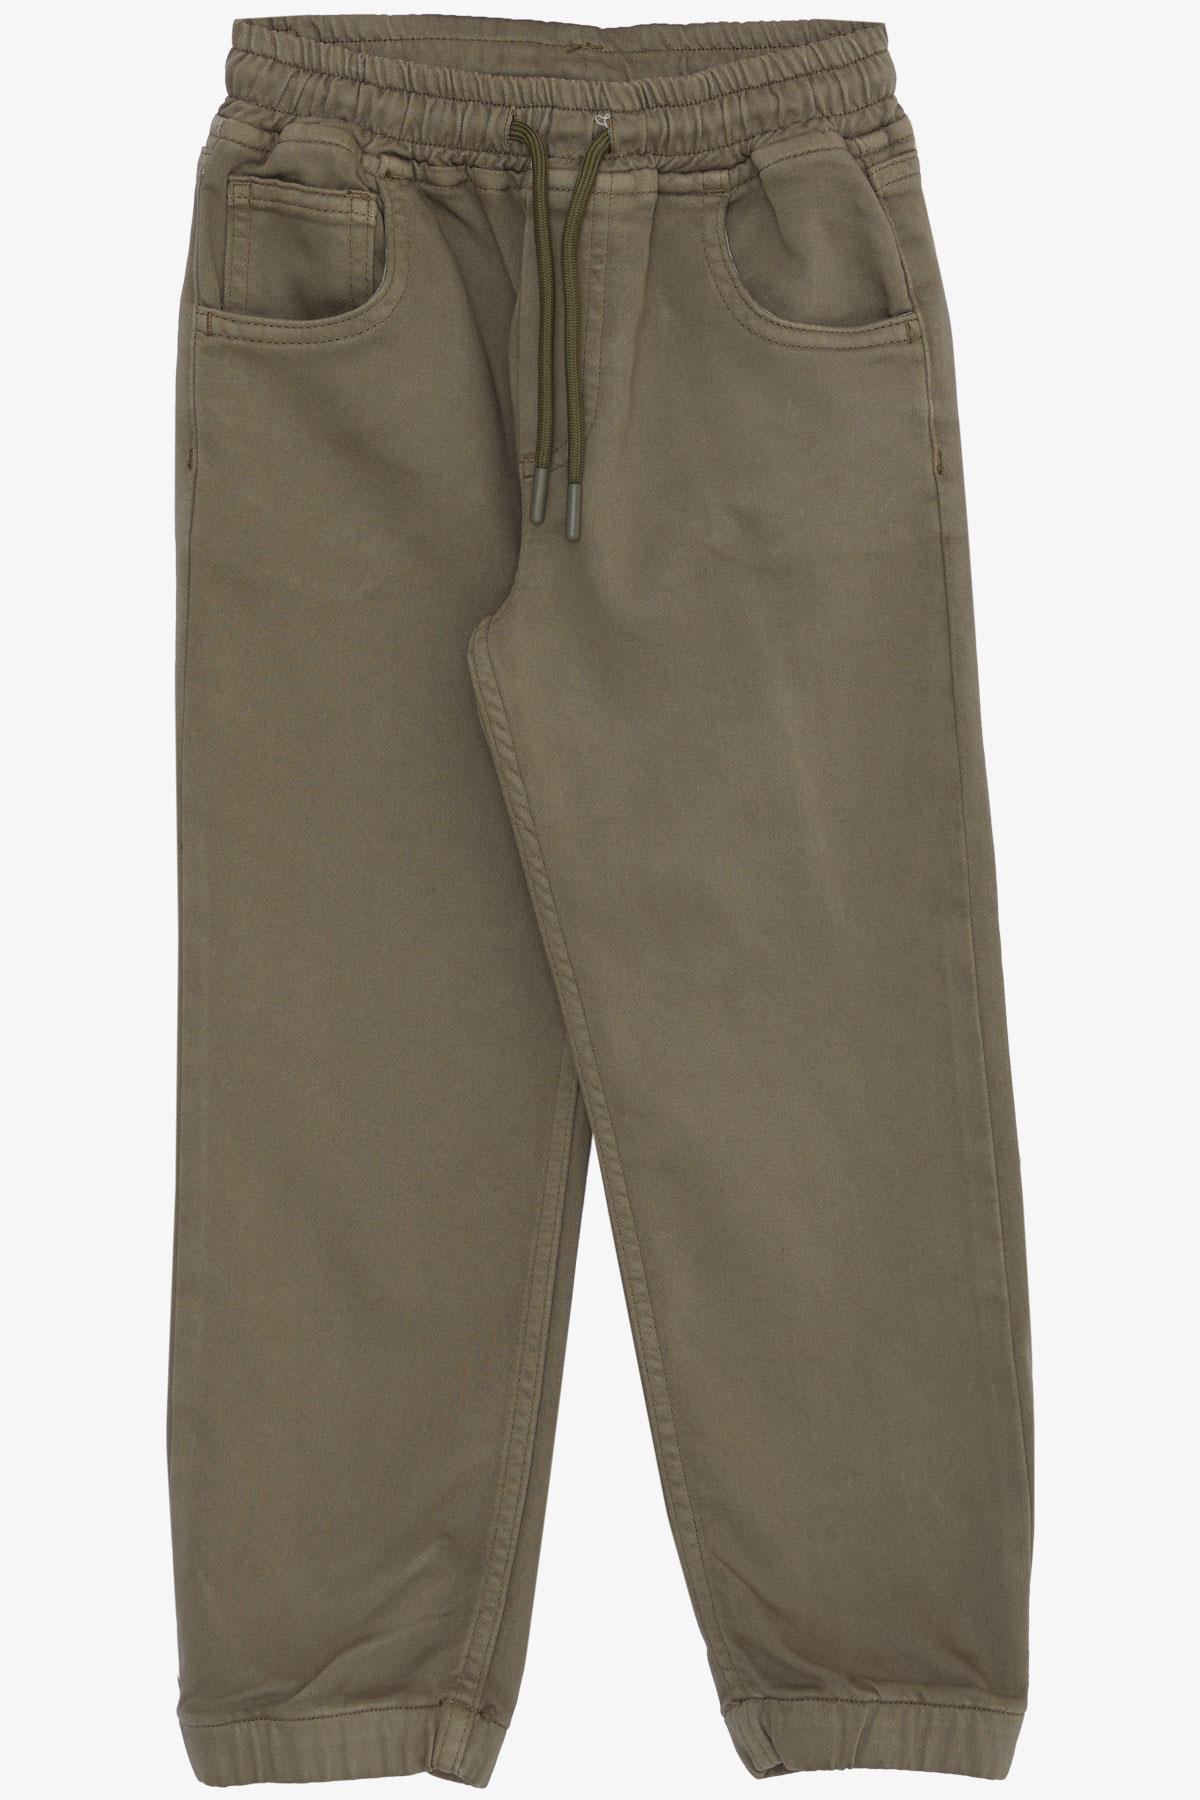 Erkek Çocuk Pantolon Bağcıklı Beli Paçası Lastikli Koyu Haki Yeşil 6-10 Yaş  - Şık Çocuk Pantolonları | Breeze